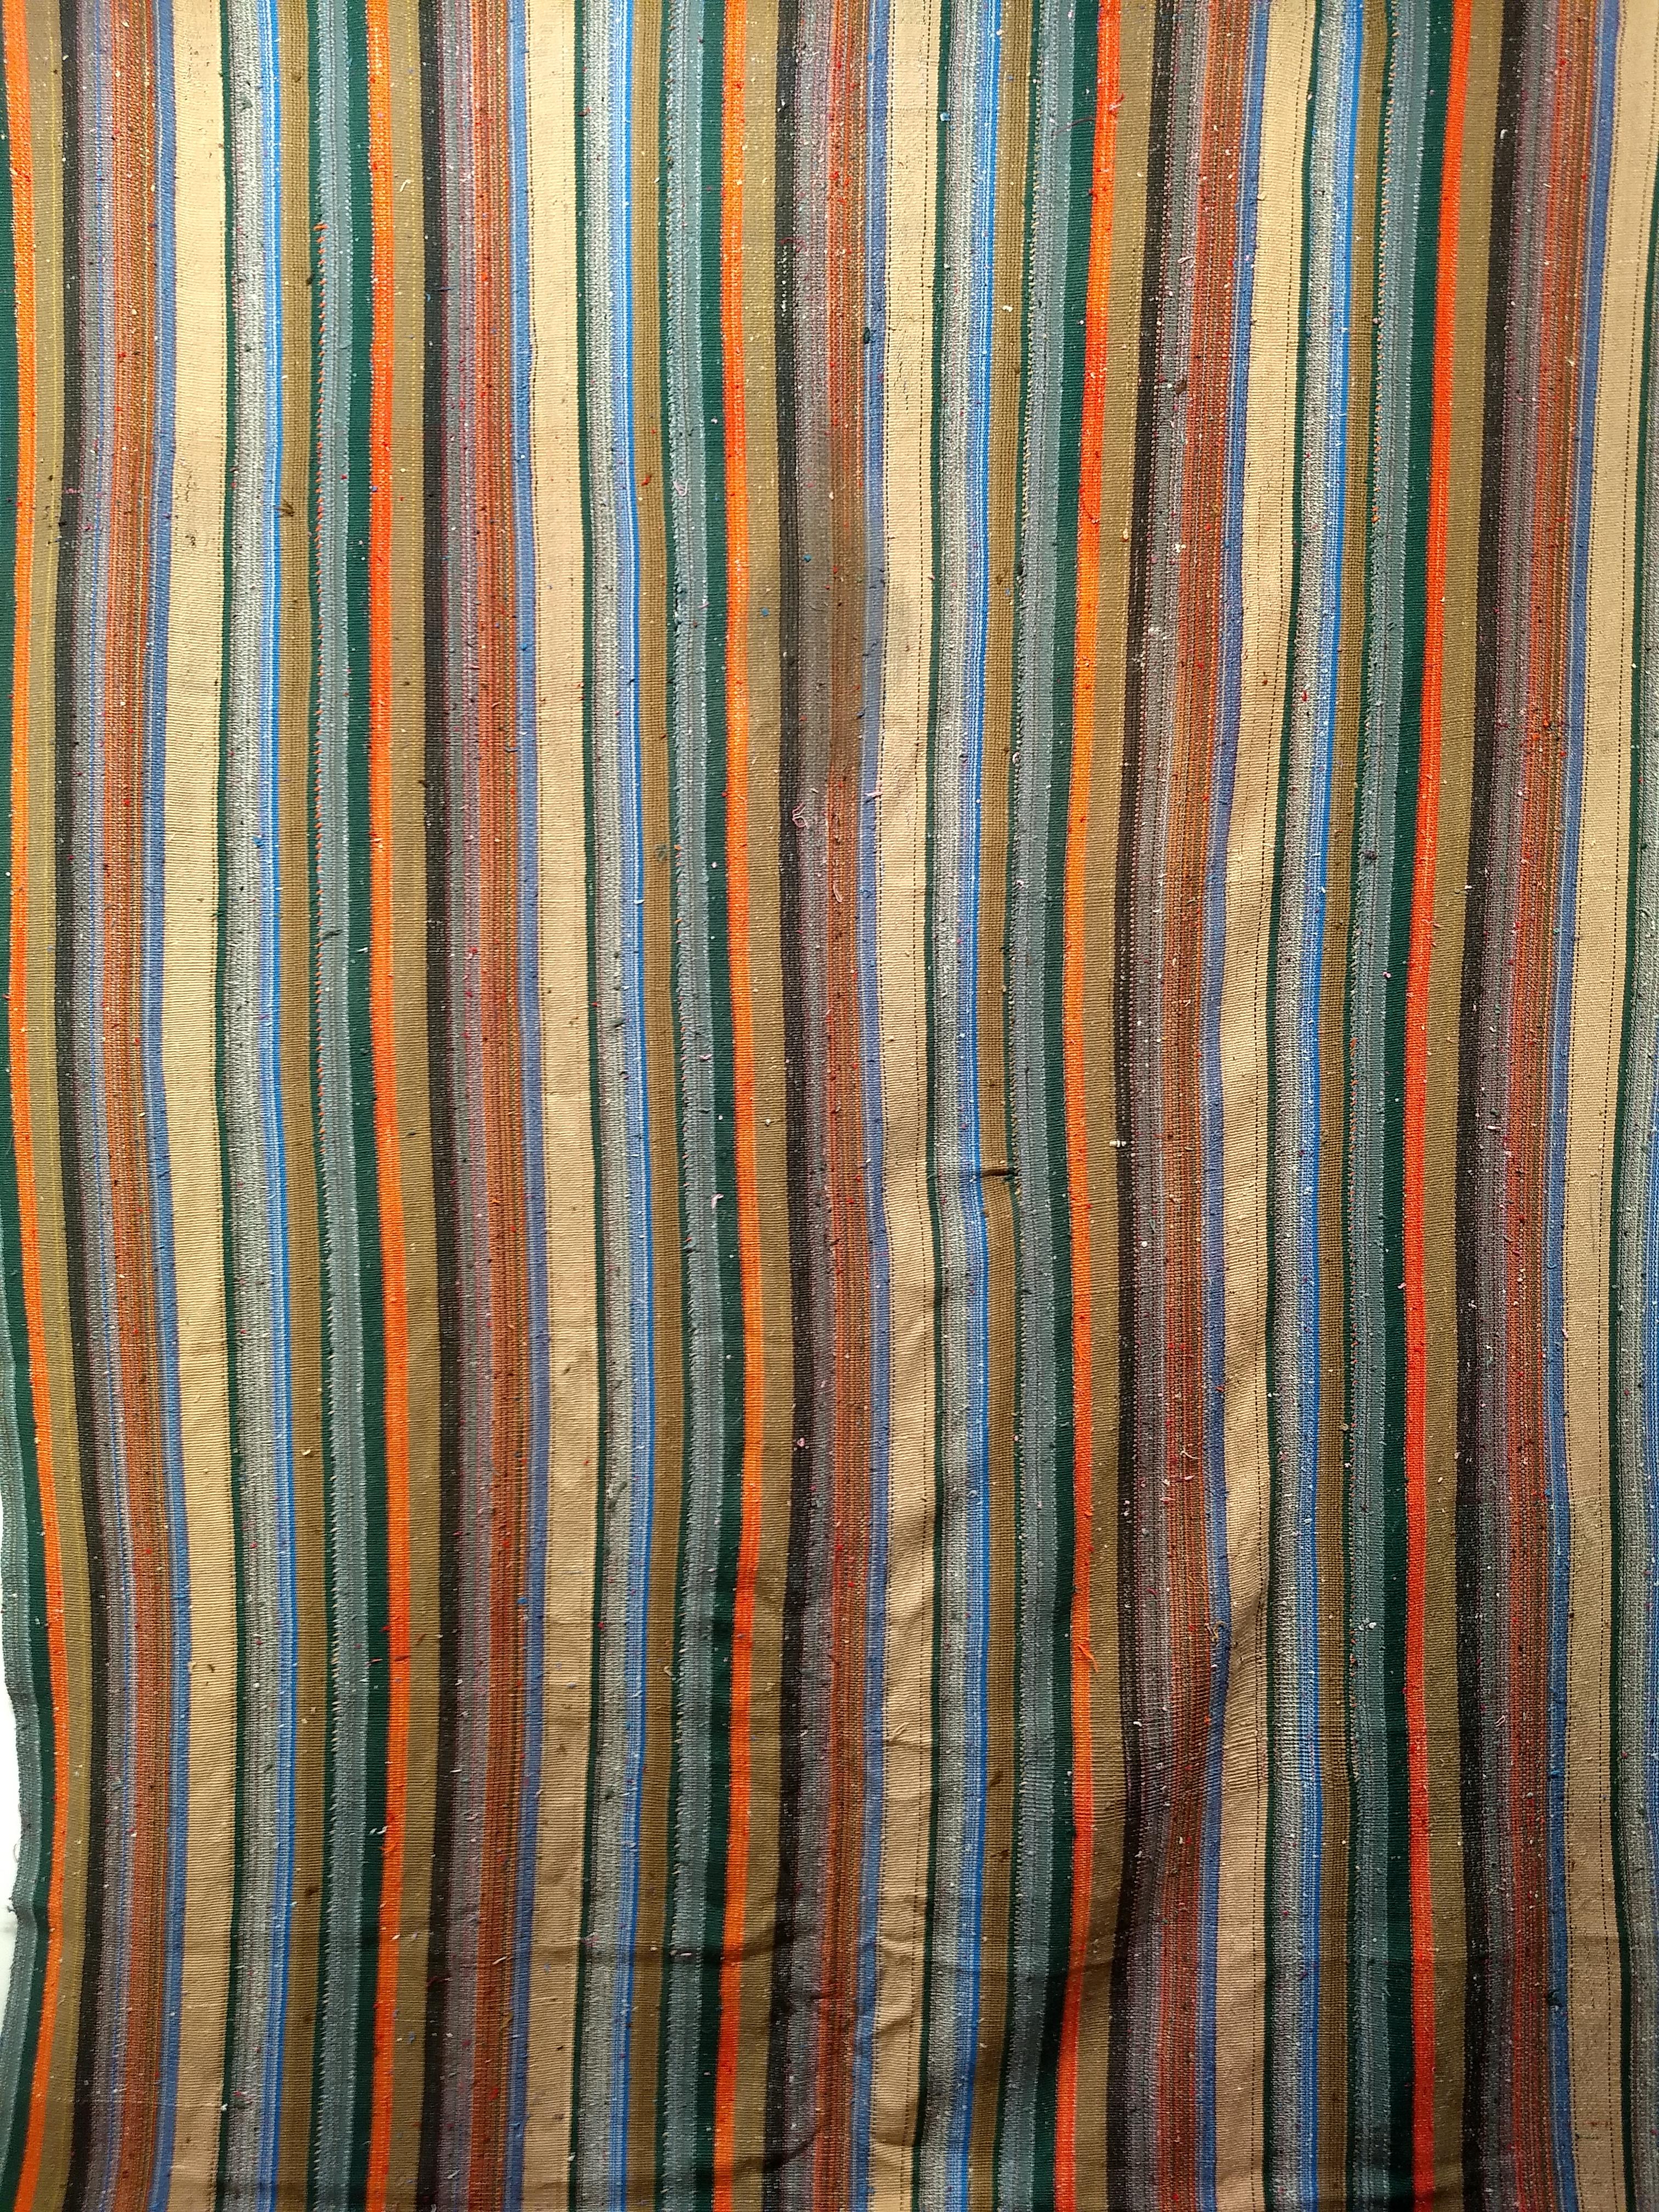 Tapis vintage persan Jajim Kilim tissé à plat avec des rayures colorées. Ce Kilim Jajim tissé à la main présente des rayures de plusieurs couleurs, dont le bleu, le vert, le rouge, l'orange, le marron, le gris, le jaune et le violet.  Le kilim Jajim